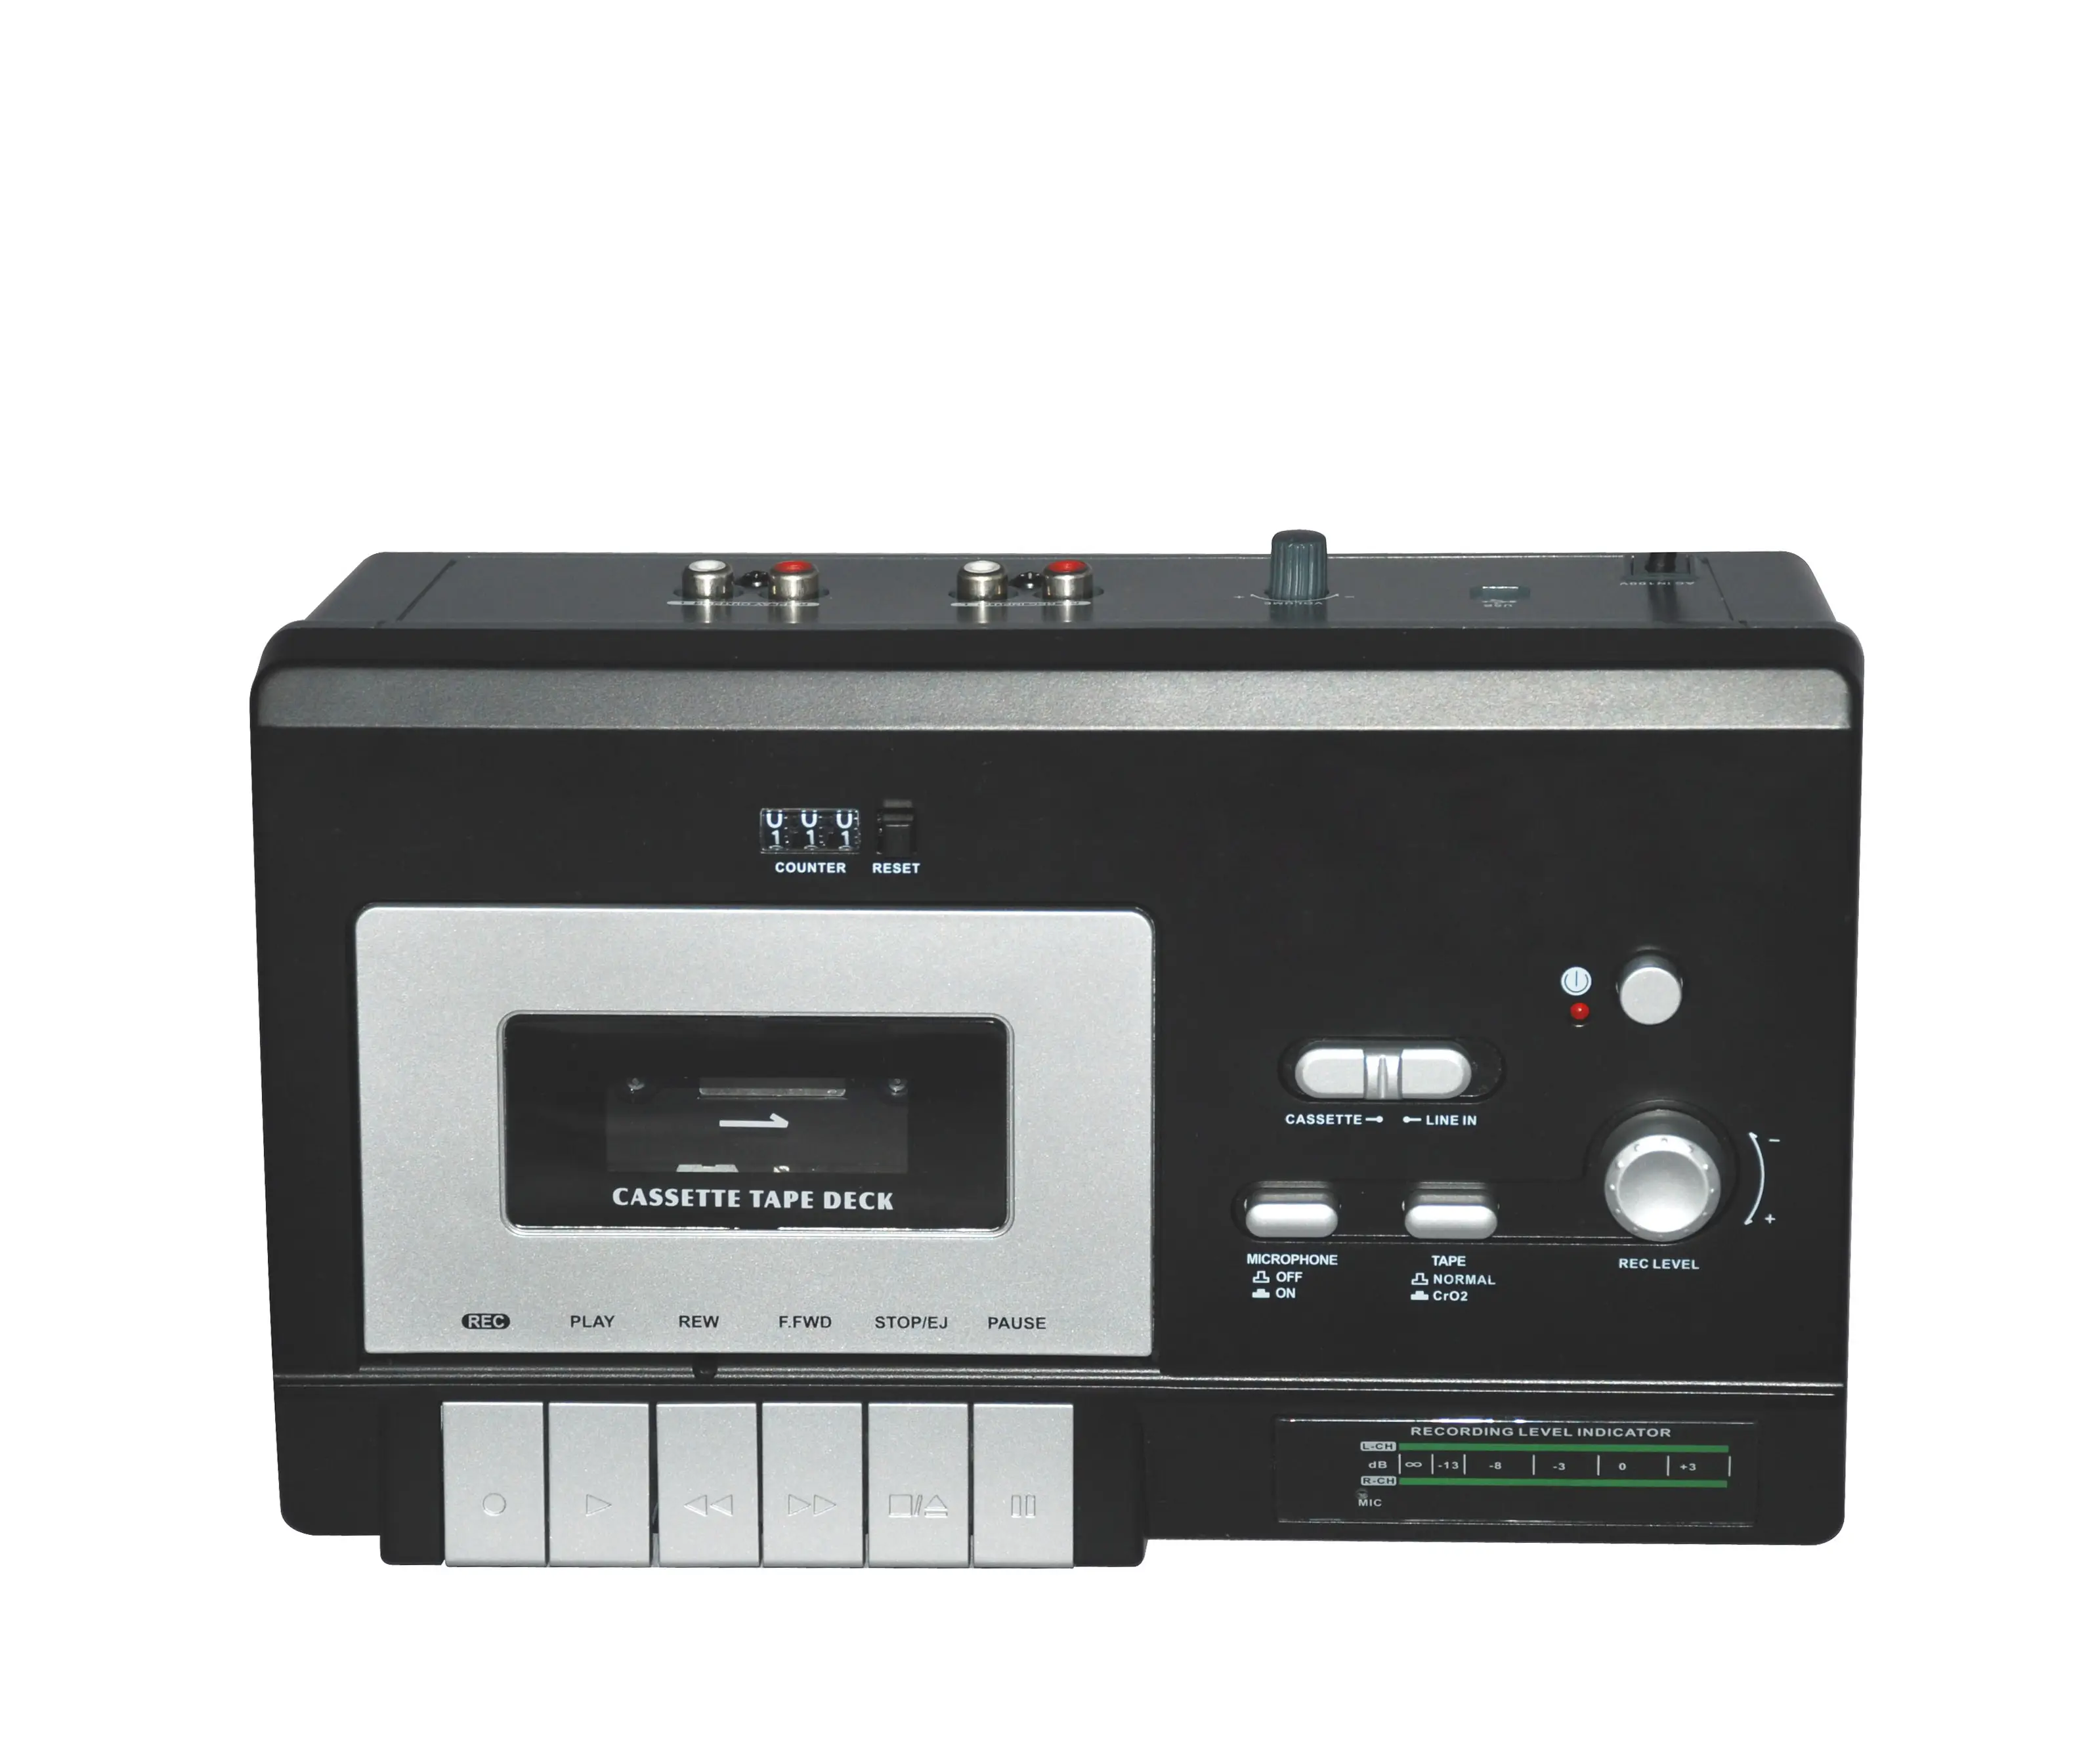 Sistema de música portátil de alta calidad con USB para PC, grabador de cassette de audio con doble cinta y altavoz Mono incorporado